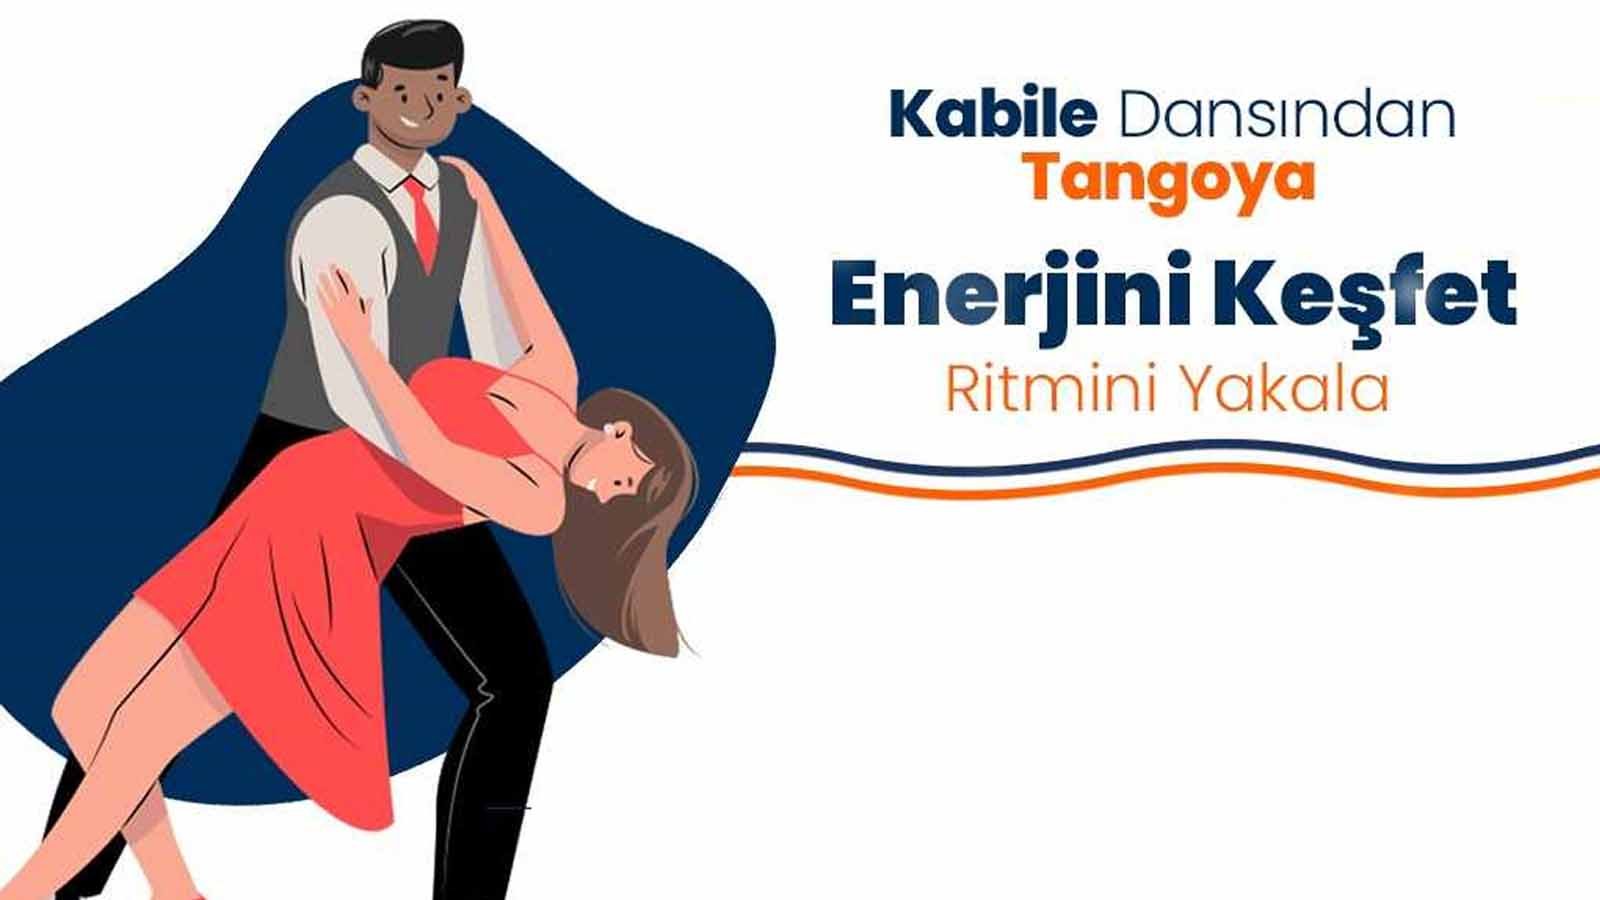 Yorgancioğlu Mim Chi 360 From Tribal Dance To Tango At Cadde24